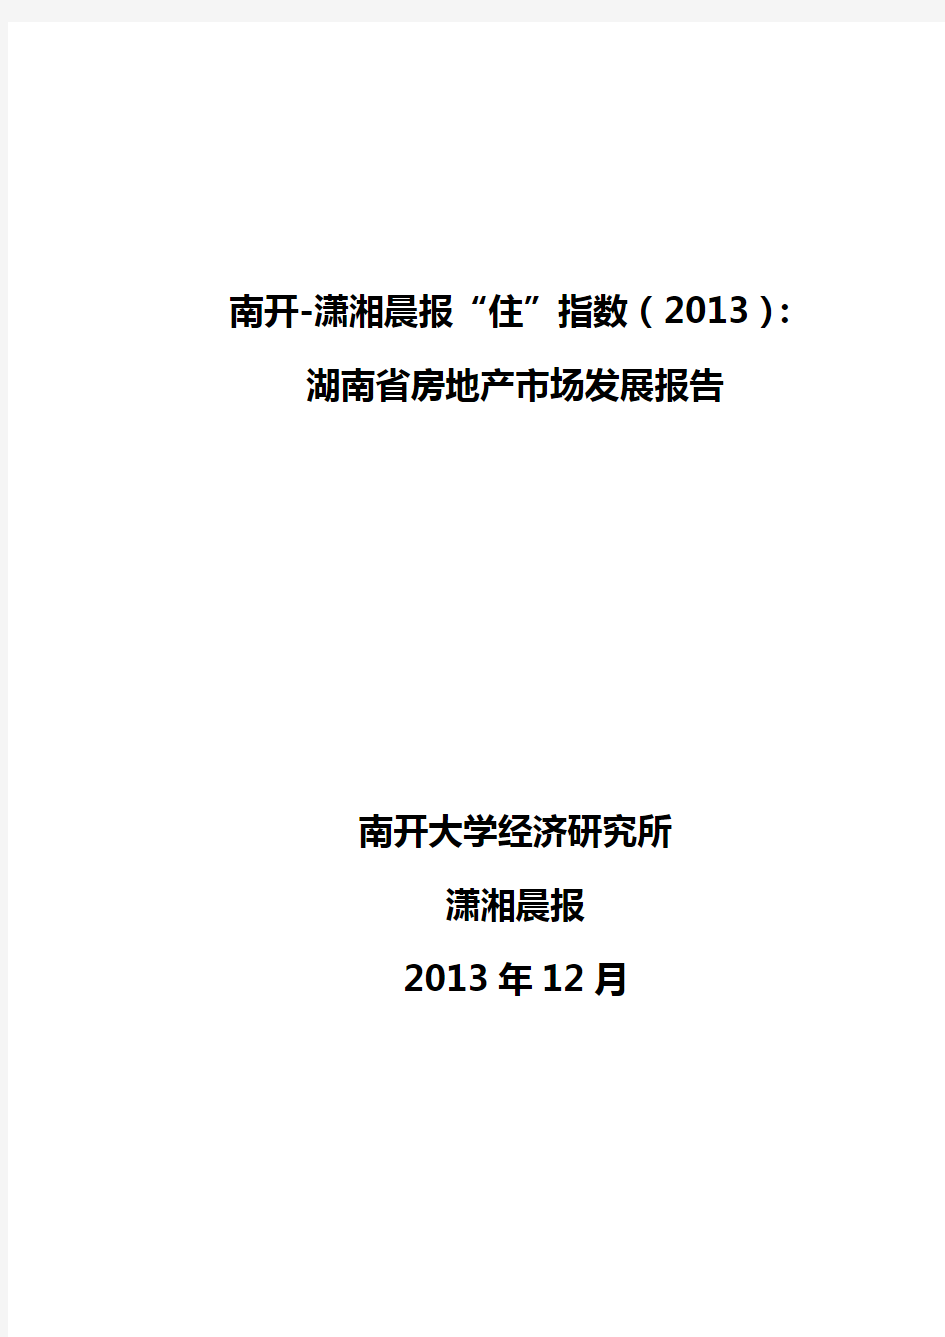 (地产市场分析)湖南省房地产市场发展报告